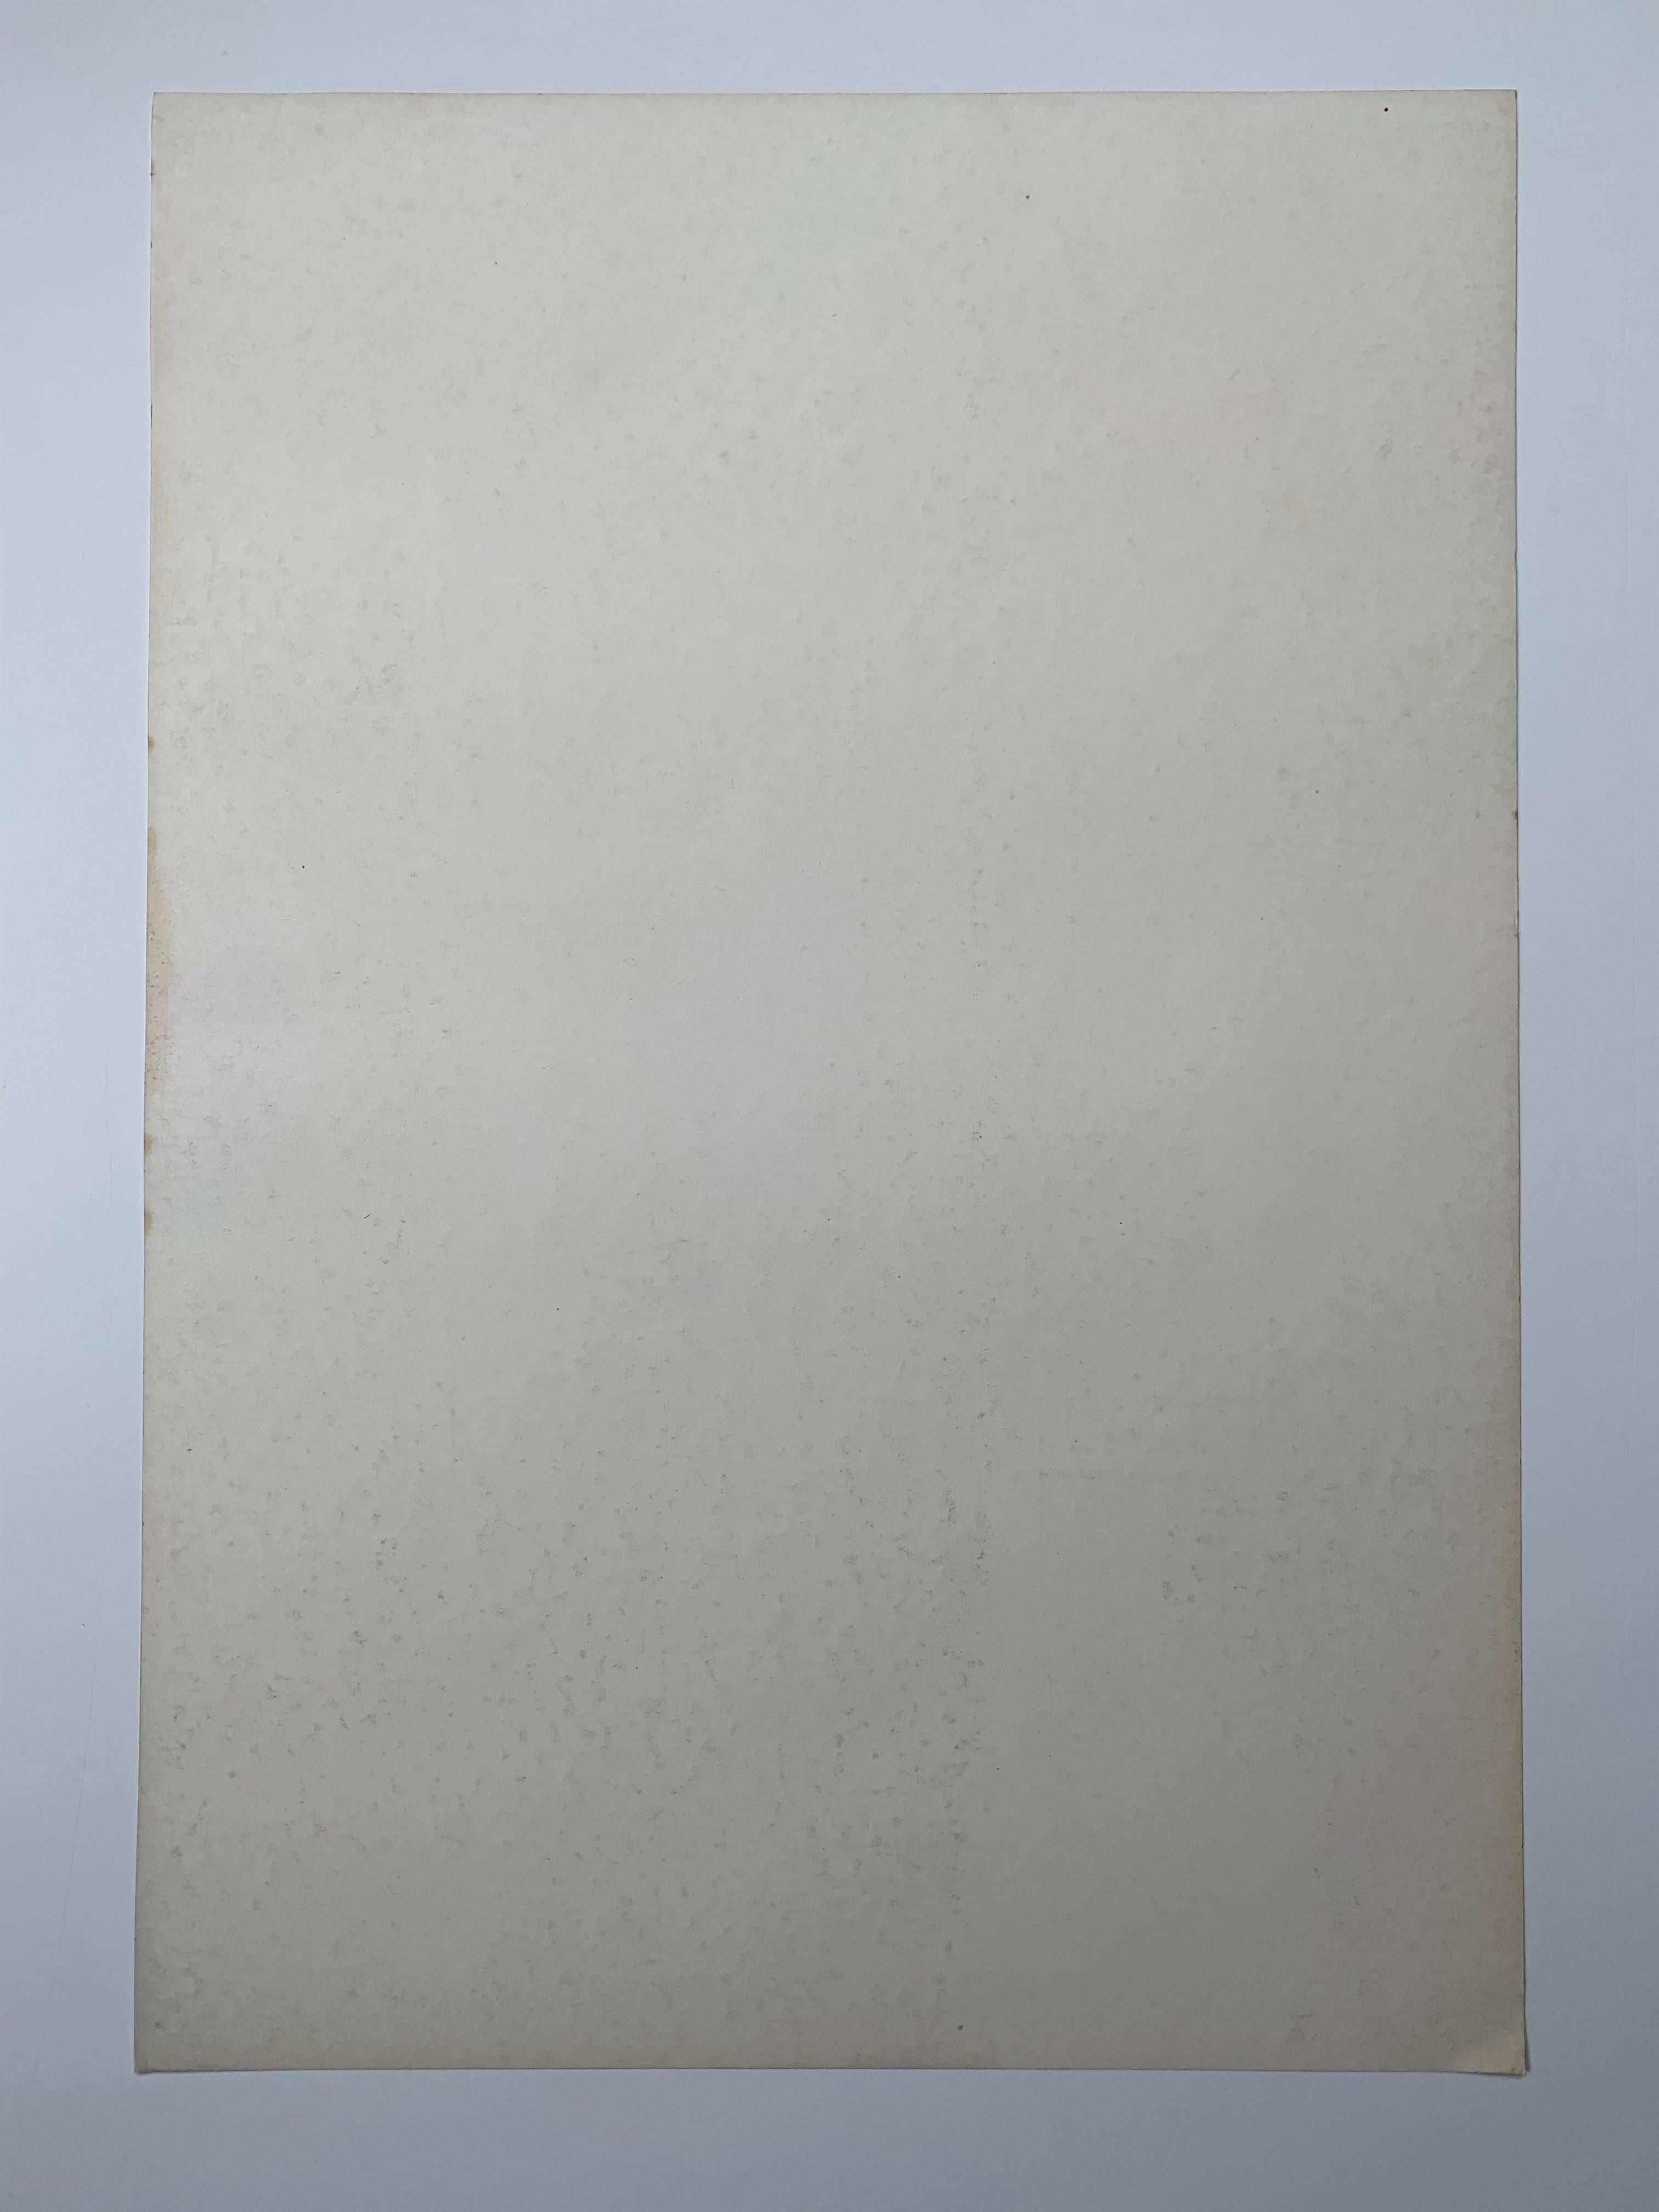 Vintage Jockstrap-Werbeplakat, 1975. Die Offsetlithografie auf Papier misst 18,5 x 12,75 Zoll. Copyright Winifred Bonney. Original-Offsetdruck auf zeitgenössischem Papier von 1975, keine nachträgliche Reproduktion oder digitale Kopie. 

Die Anzeige